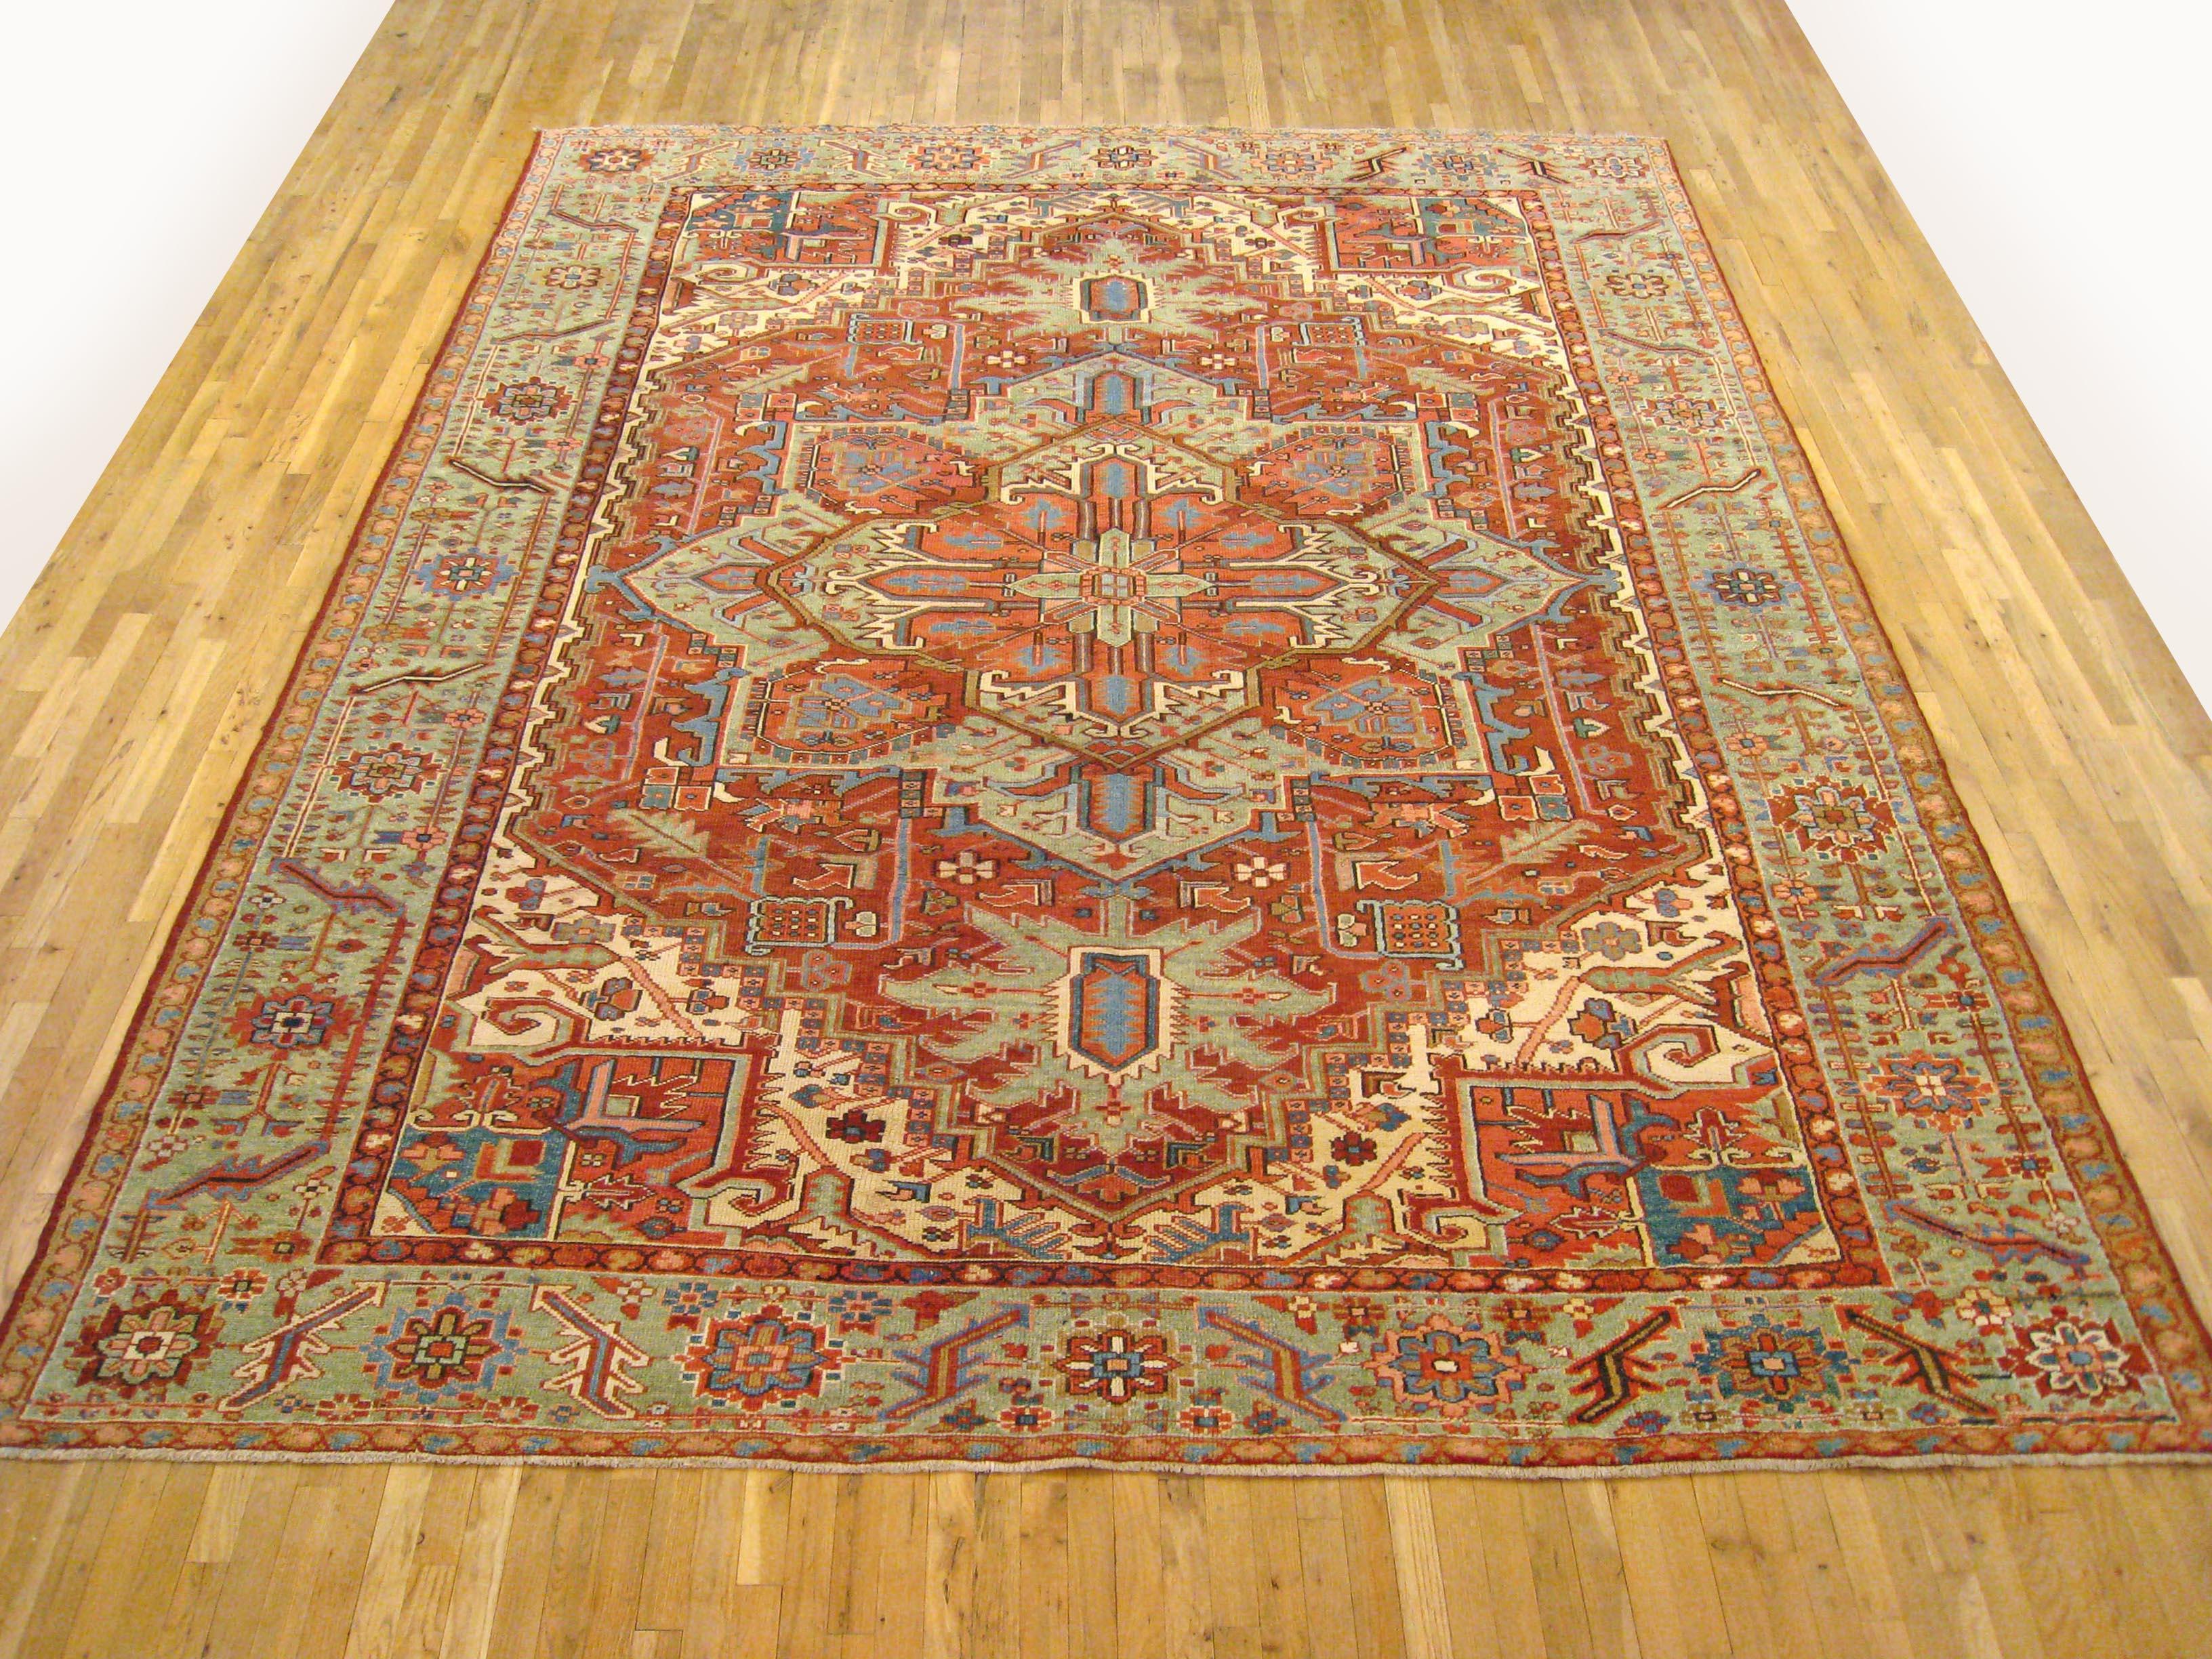 Antique Persian Heriz oriental rug, room size

An antique Persian Heriz oriental rug, size 12'7